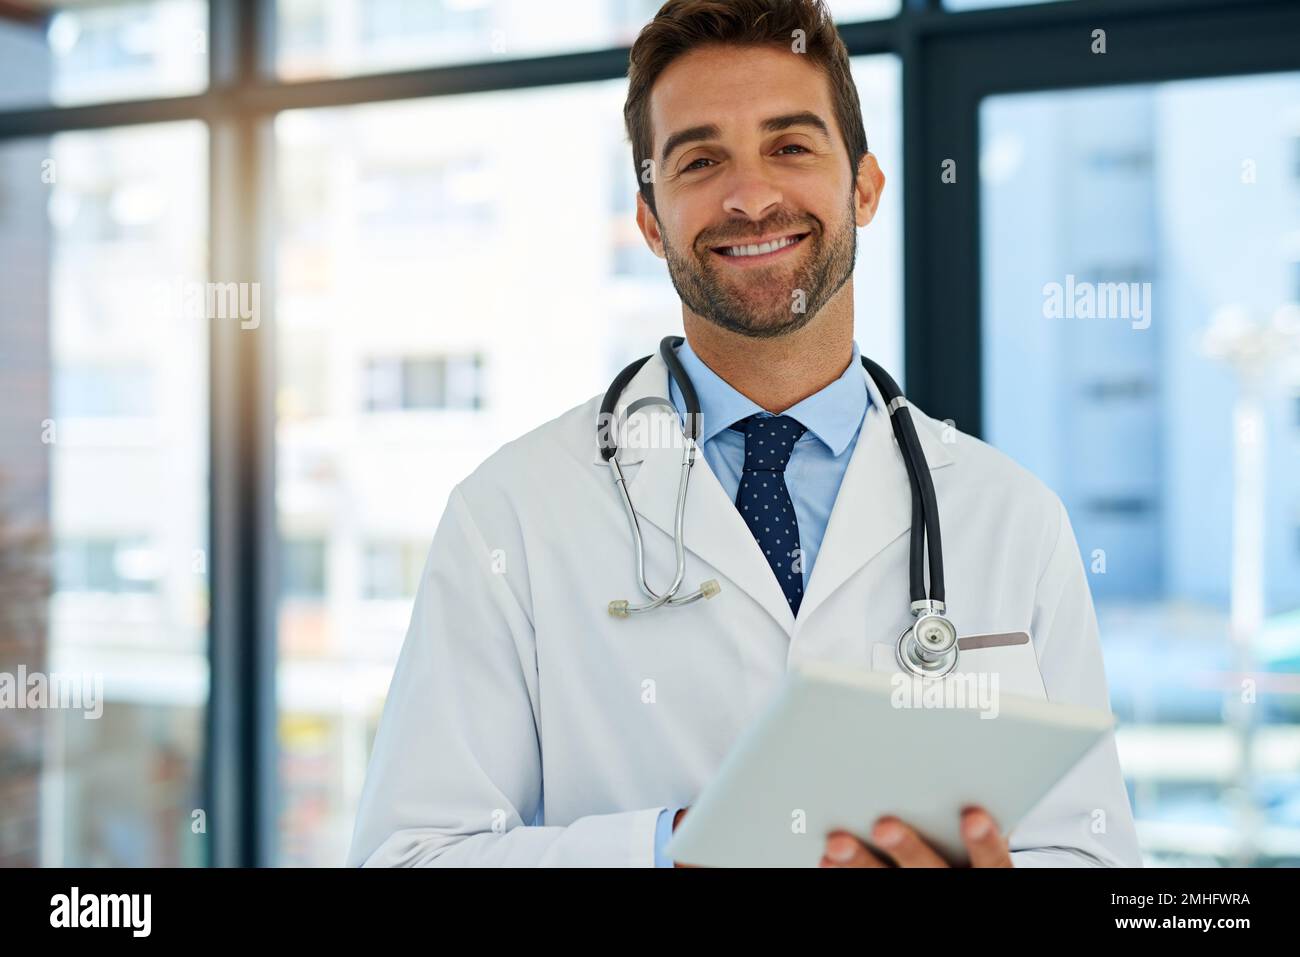 Mit der neuesten Technologie zu heilen. Porträt eines beschäftigten Arztes, der die Krankenakte eines Patienten auf seinem Tablet überprüft. Stockfoto